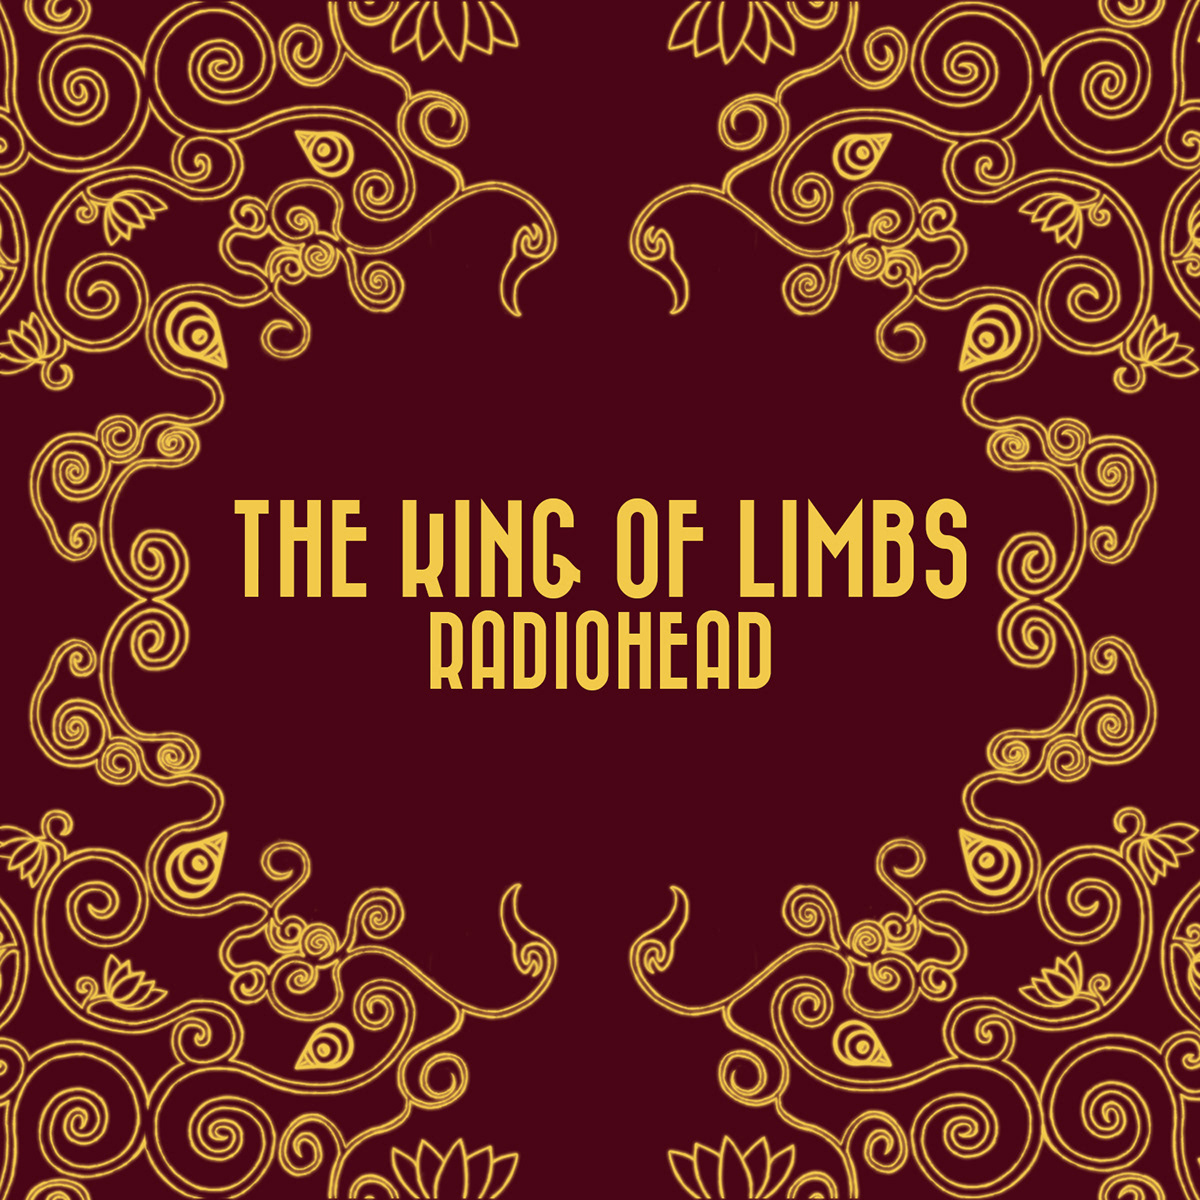 thom Yorke Radiohead Lotus king Mockup album cover Music Player brahma